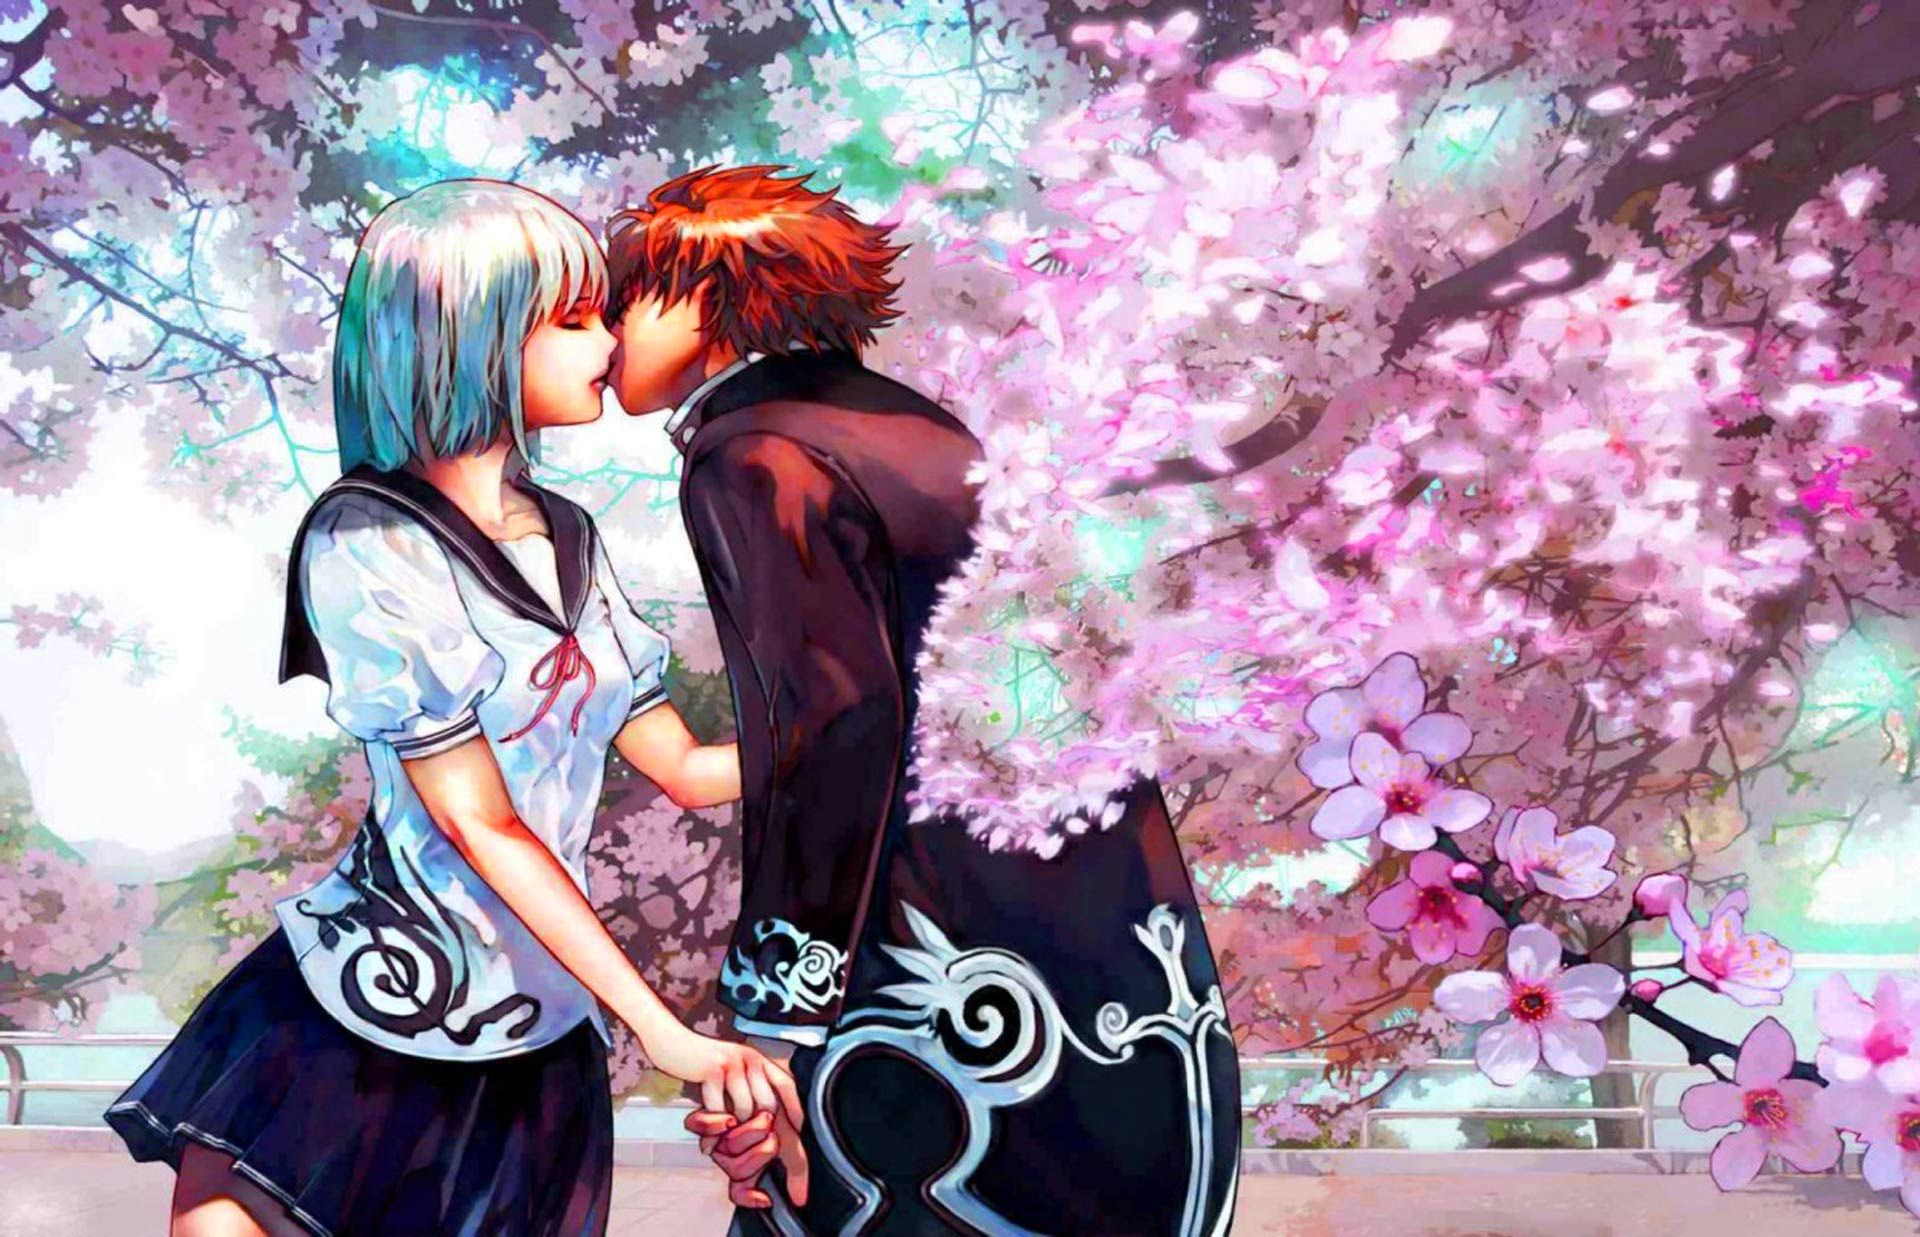 wallpapers de amor,anime,romance,interaction,cg artwork,spring